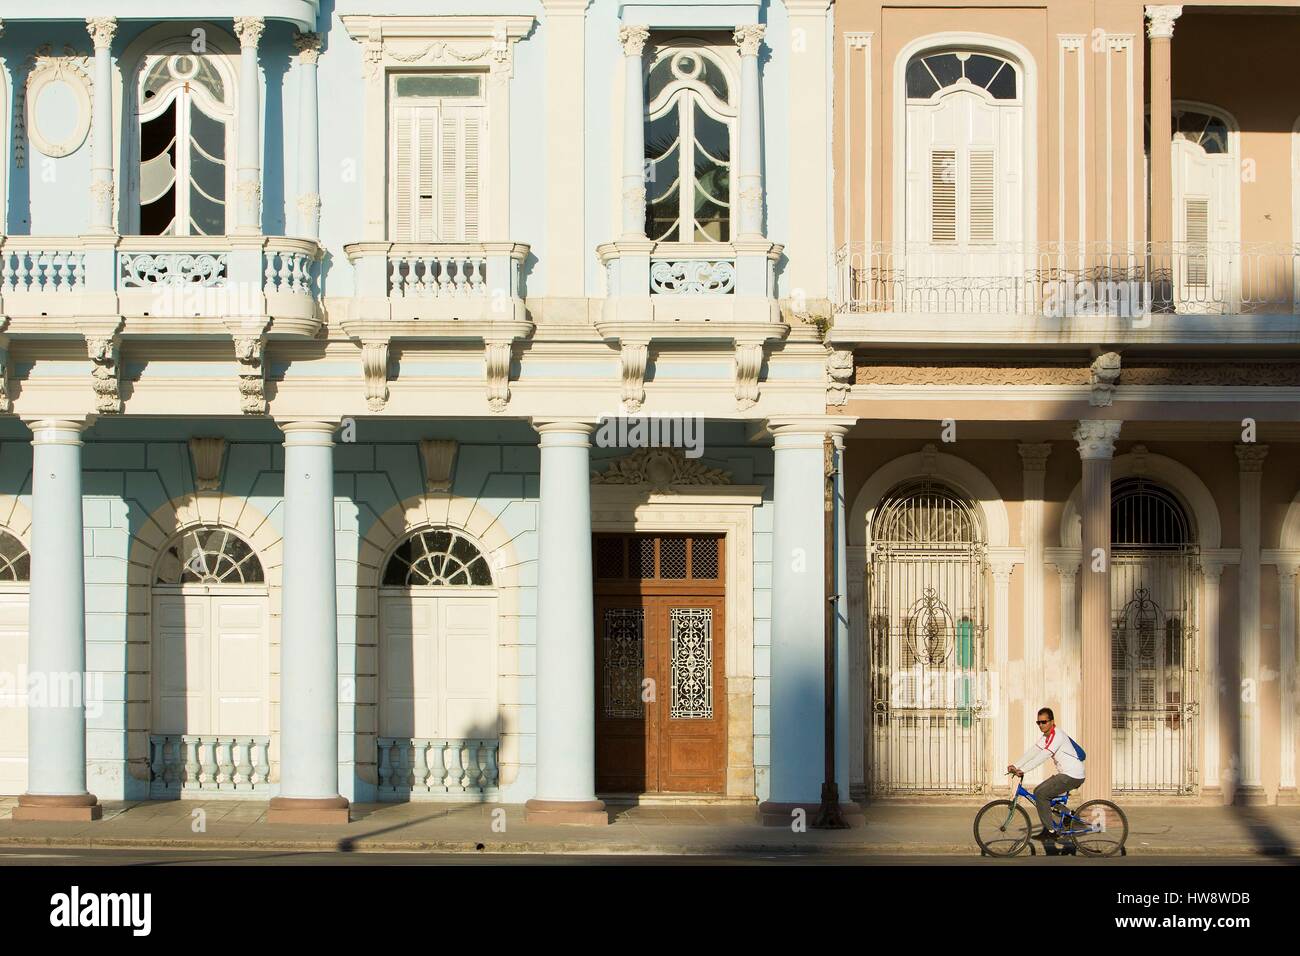 Cuba, Cienfuegos province, Cienfuegos, historical center listed as World Heritage by UNESCO, Casa de la Cultura Benjamin Duarte former Palacio de Ferrer built in 1918 located in Jose Marti square Stock Photo